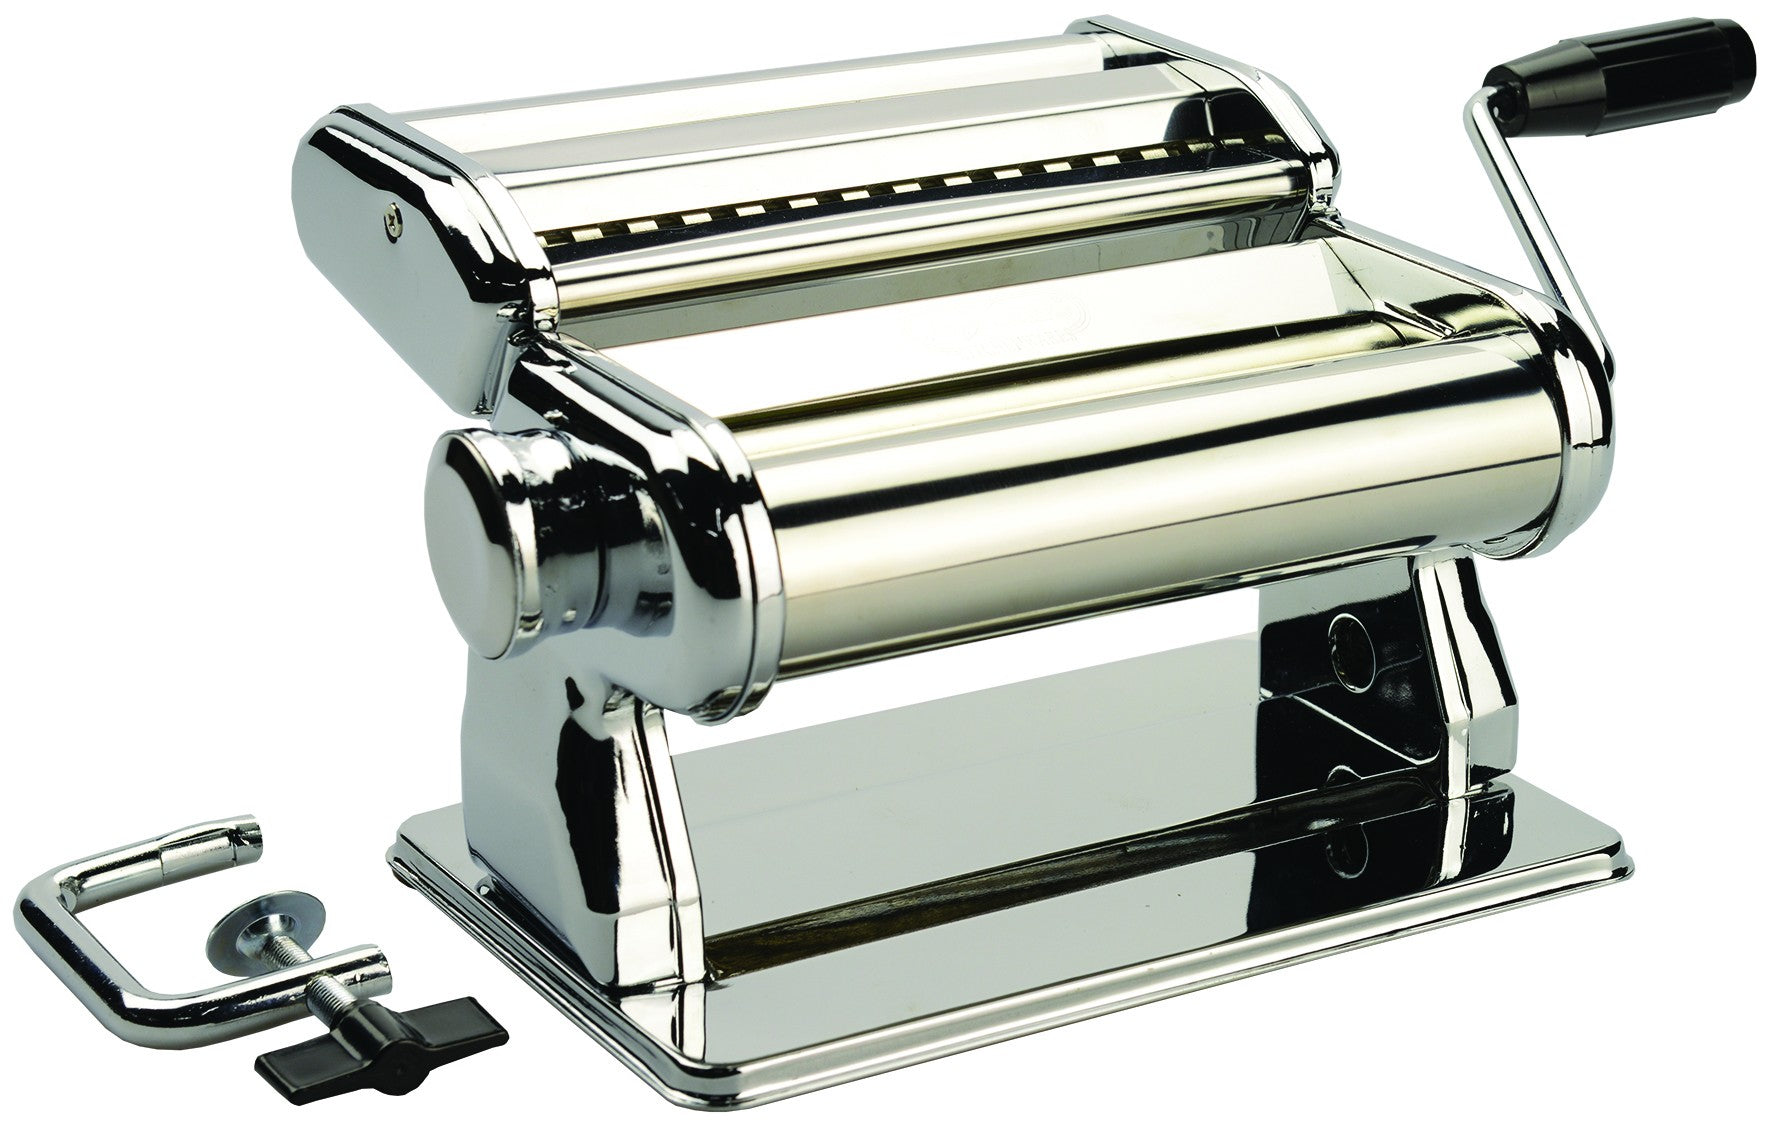 Avanti Stainless Steel Pasta Making Machine 180mm